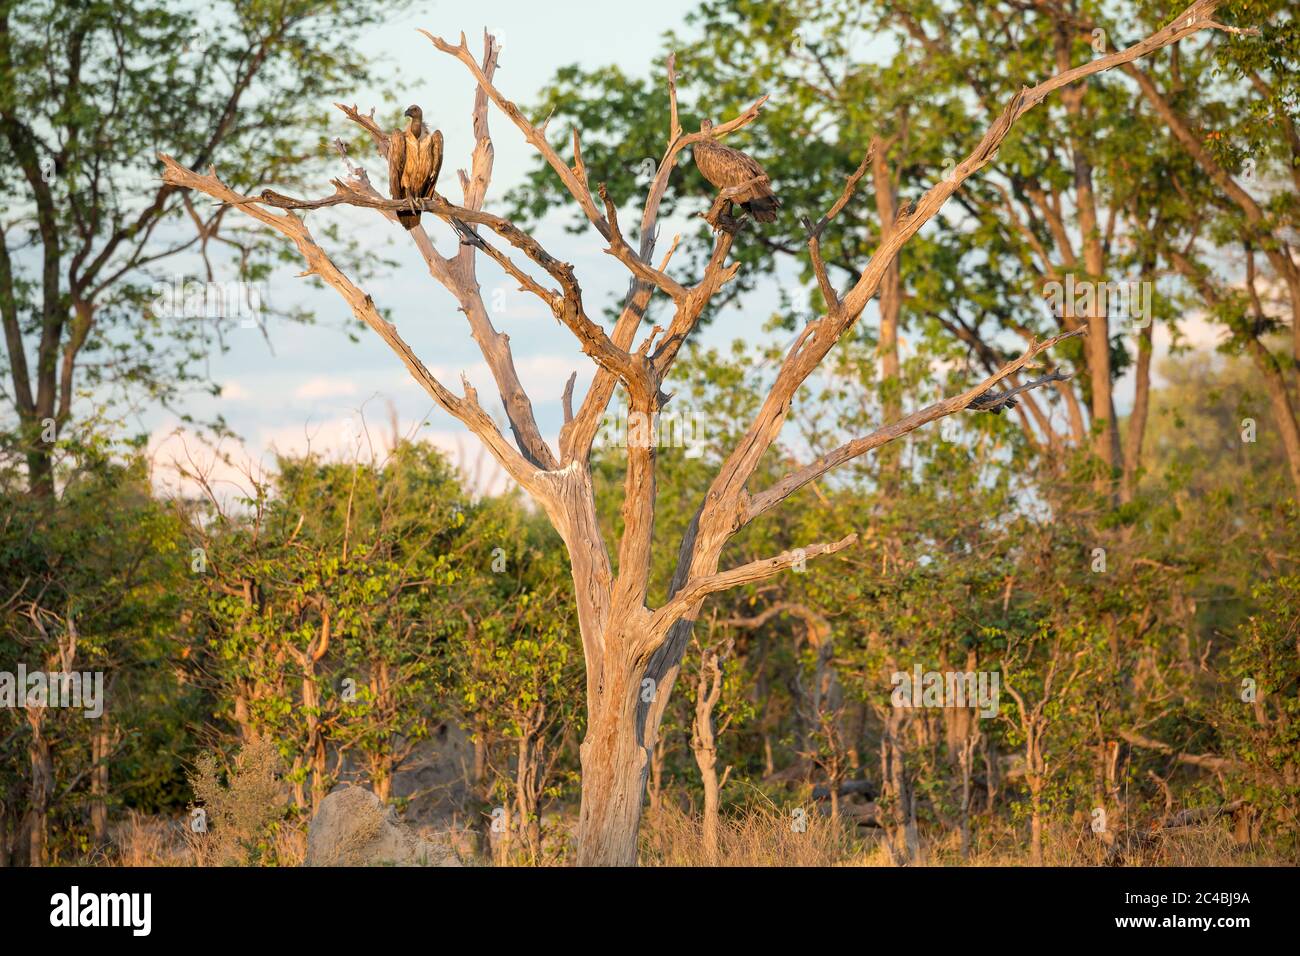 Deux grands oiseaux de proie, vautours perchés dans un arbre. Banque D'Images